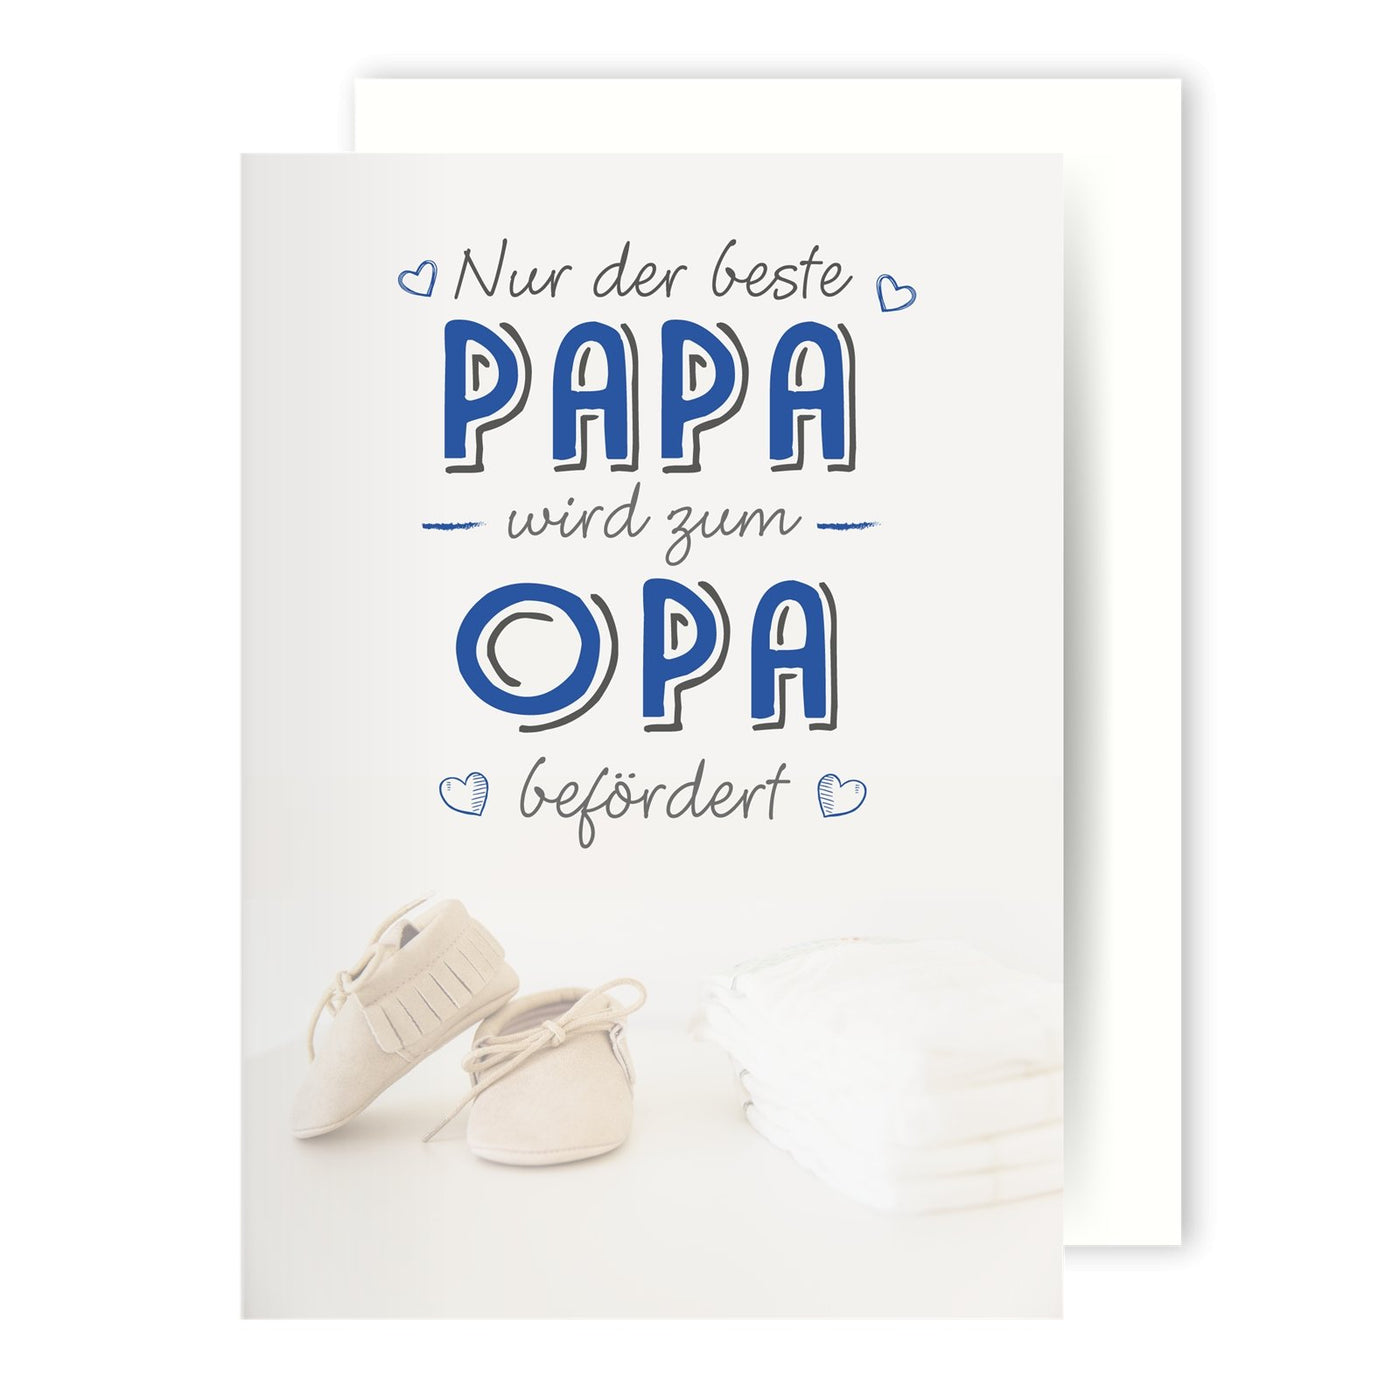 Bild: Grußkarte - Nur der beste Papa wird zum Opa befördert Geschenkidee